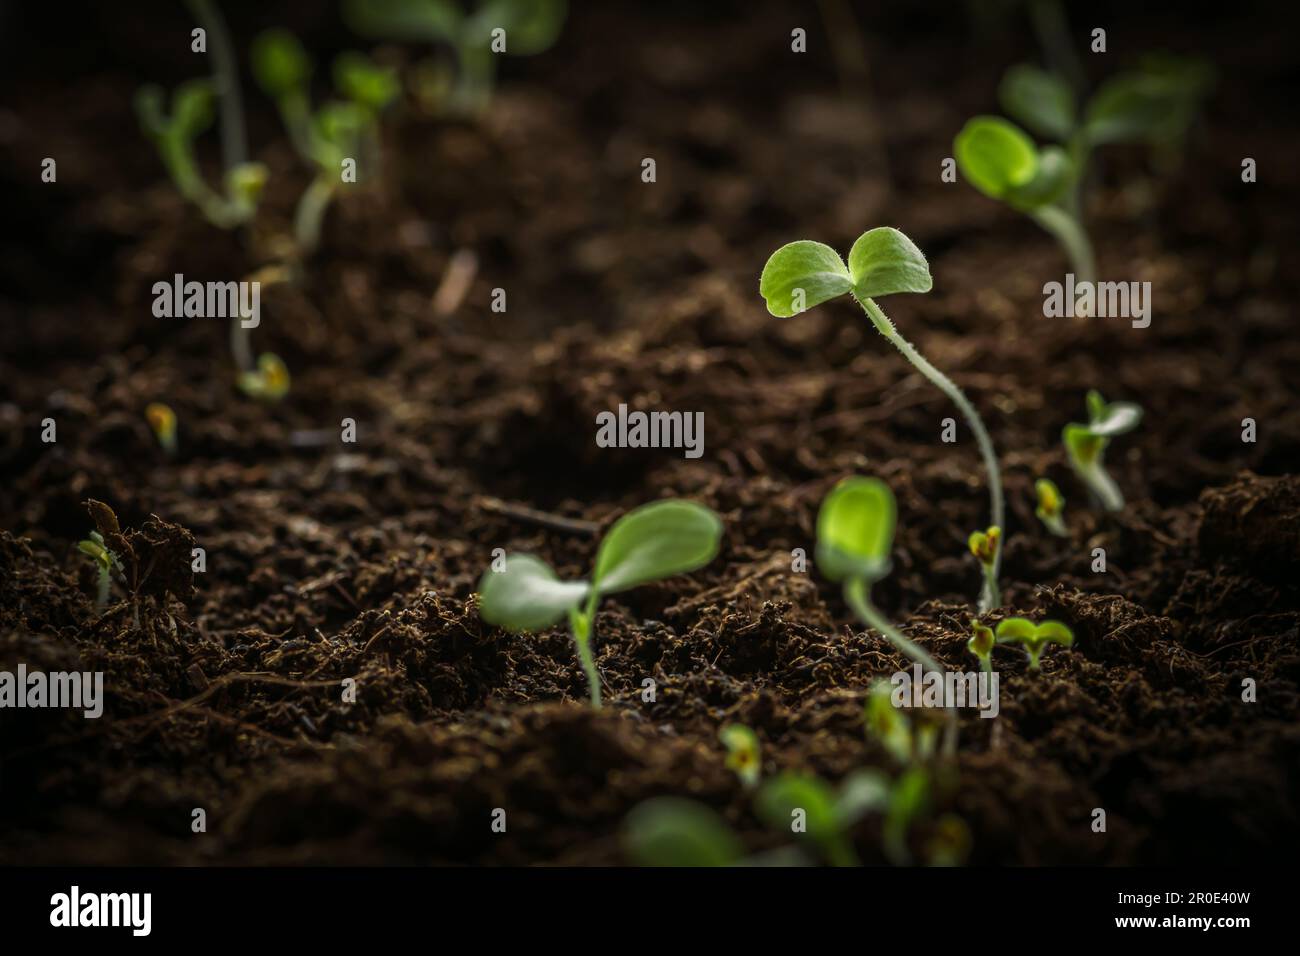 De petits jeunes plantules de laitue verte viennent d'être germées à partir de semences plantées dans un sol fertile de mise en pot, en gros plan Banque D'Images